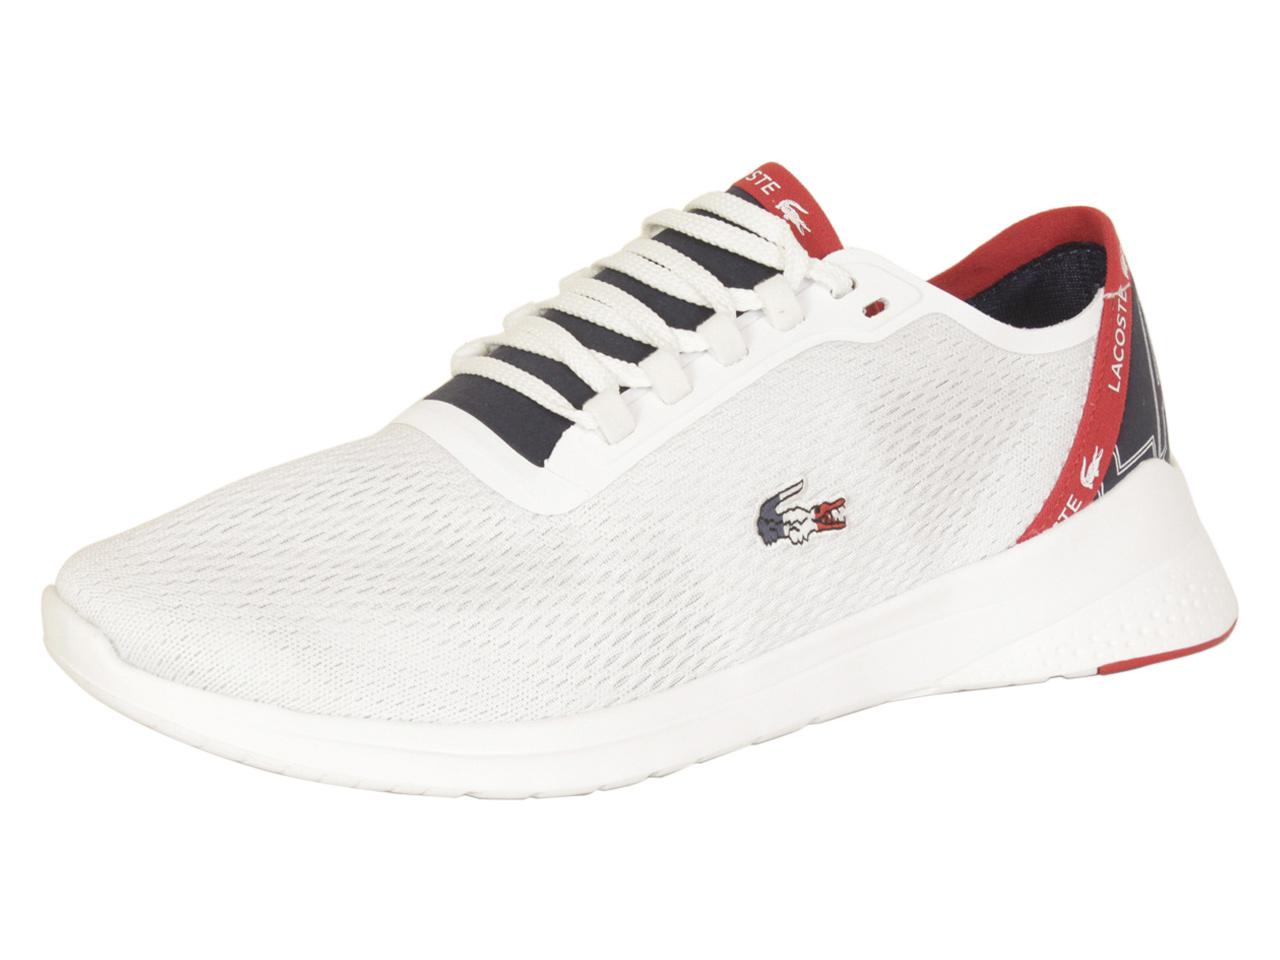 Frastøde Distraktion Rejse tiltale Lacoste Men's LT-Fit-119 White/Navy/Red Sneakers Shoes Sz: 13 | JoyLot.com